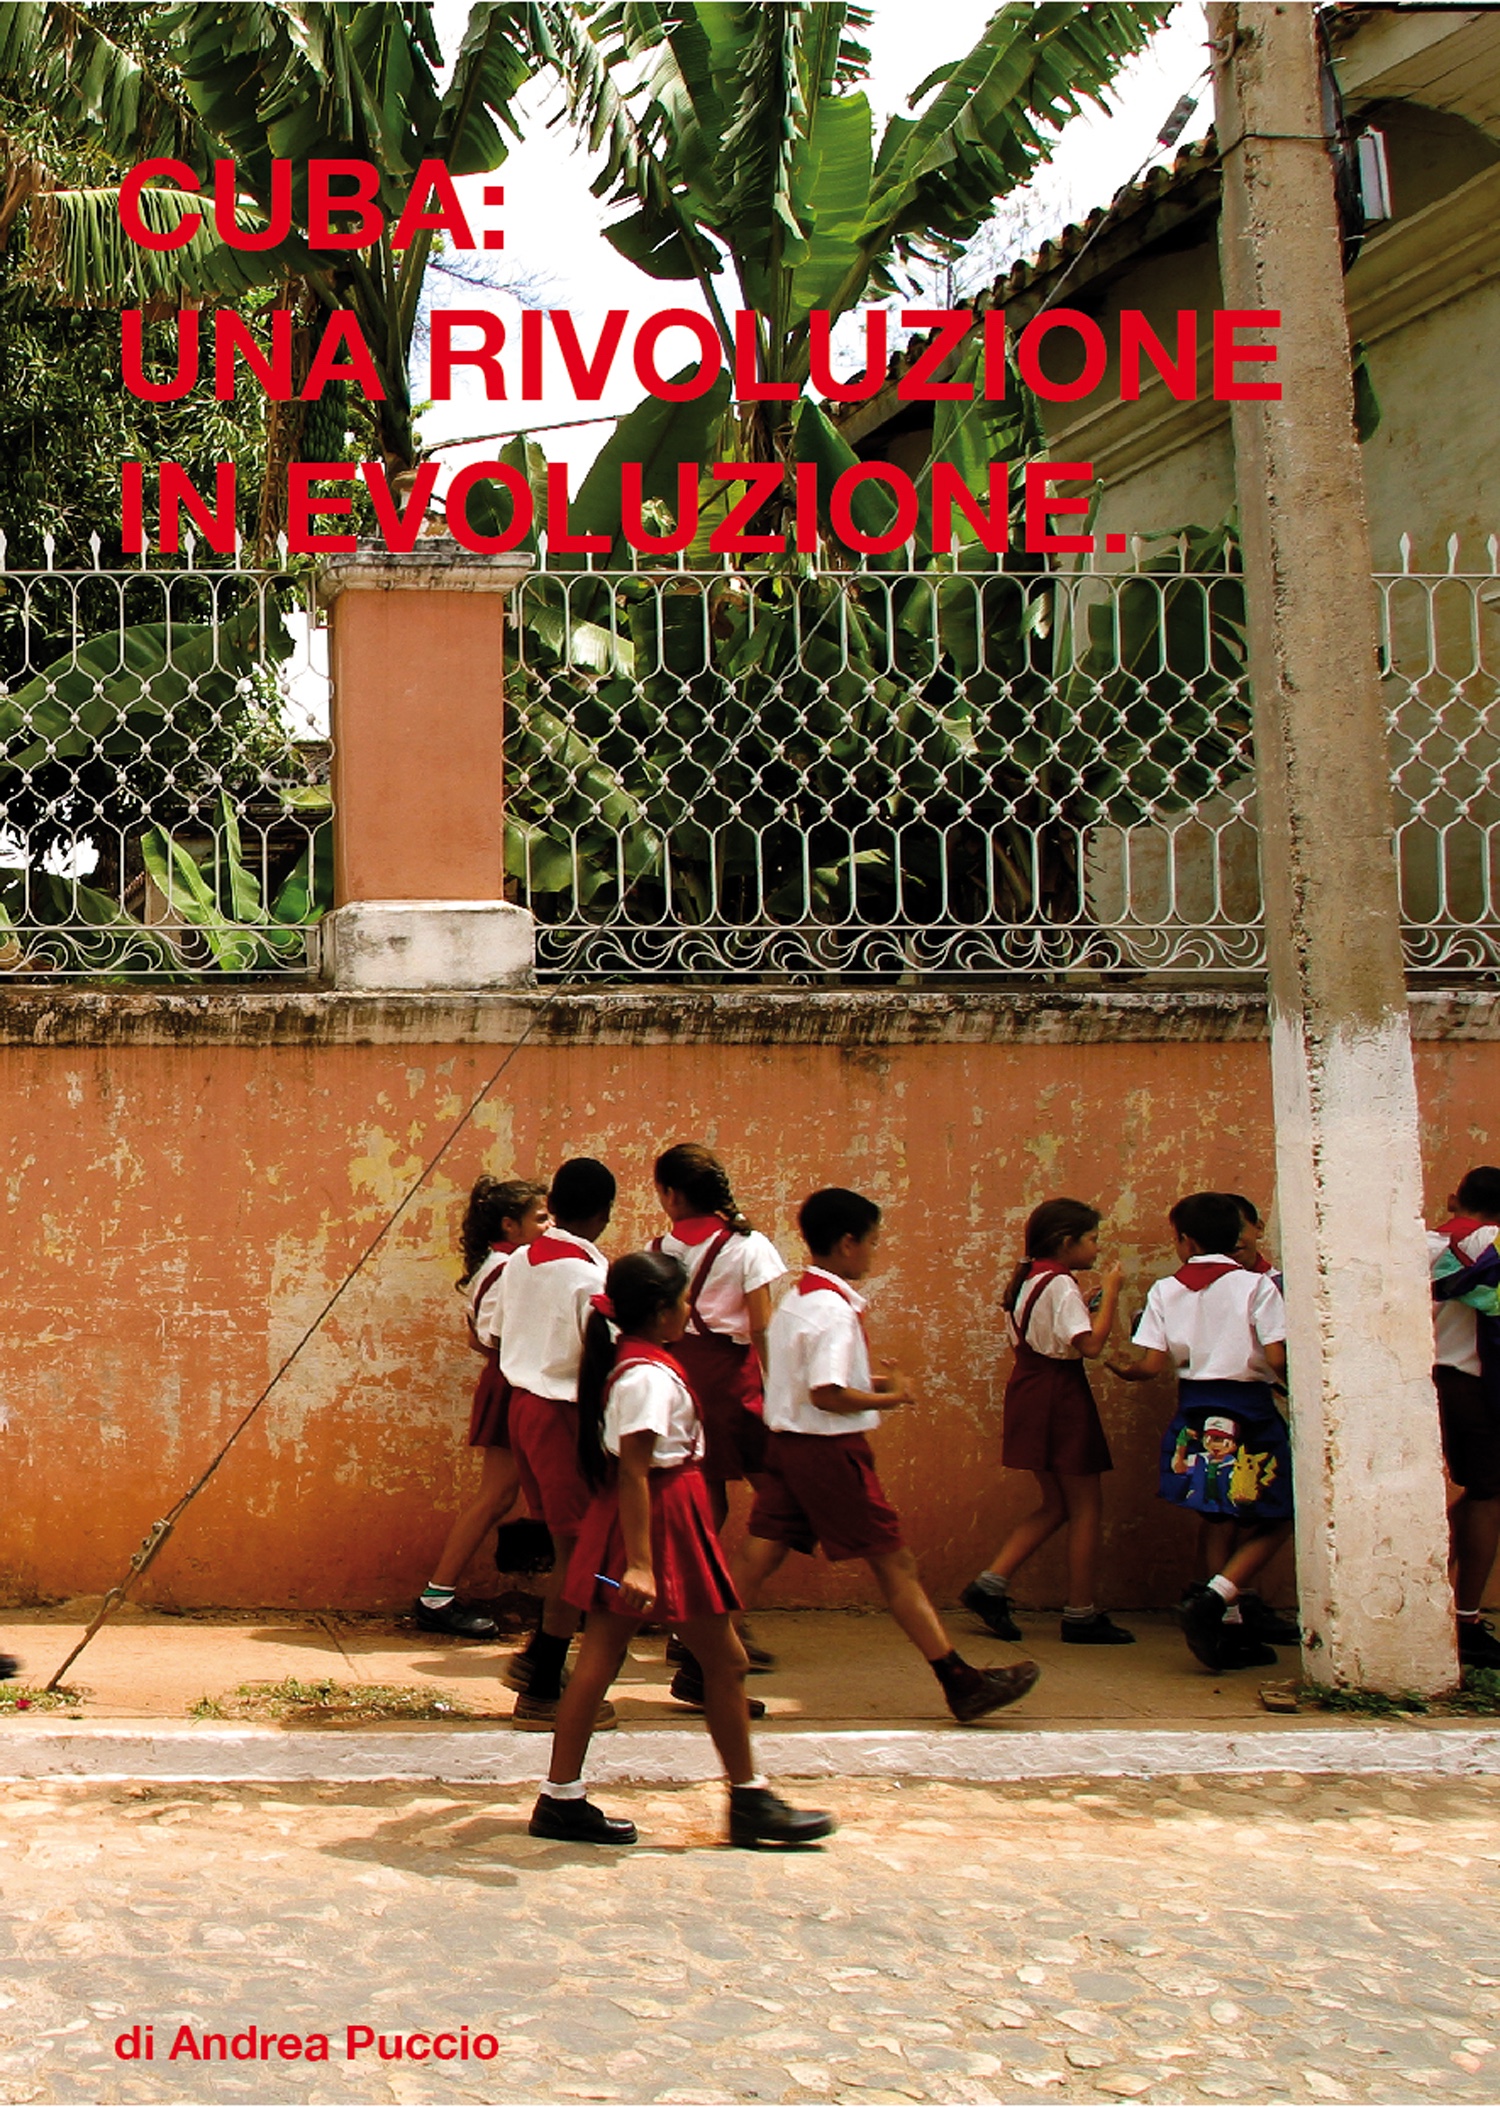 “CUBA: EVOLUZIONE DI UNA RIVOLUZIONE” il nuovo libro di Andrea Puccio